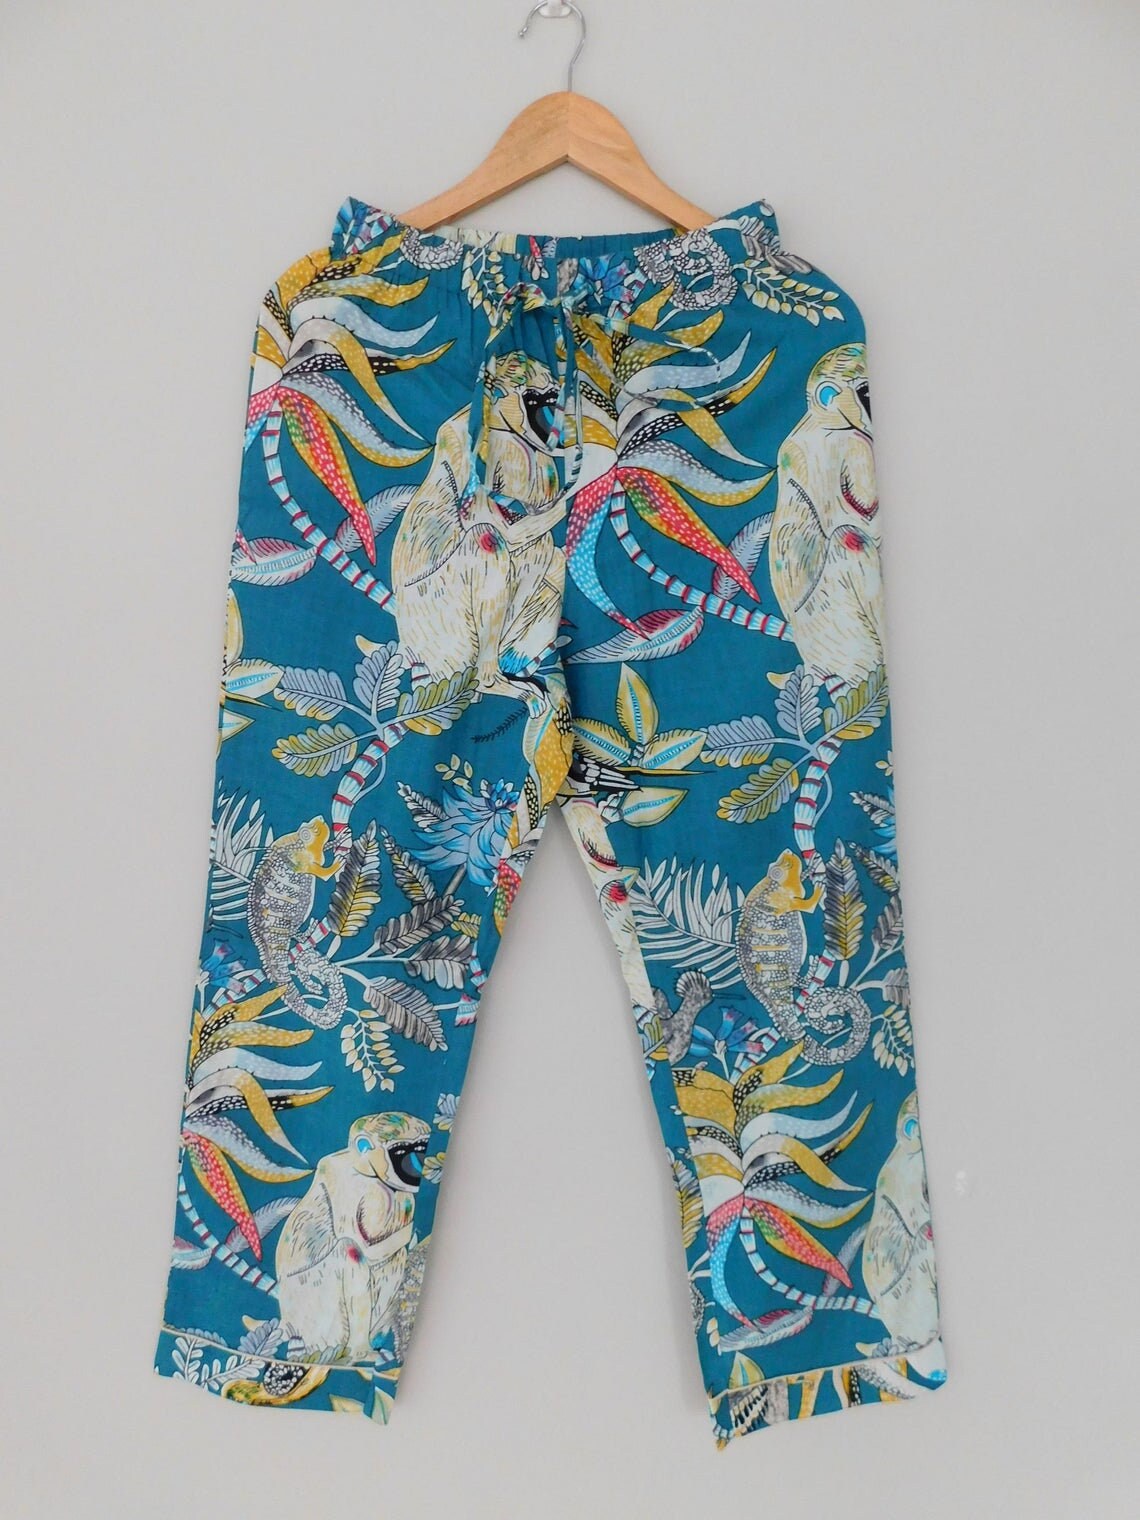 FULL LENGTH Monkey Print Blue Pajama Setmatching Pyjama Set | Etsy